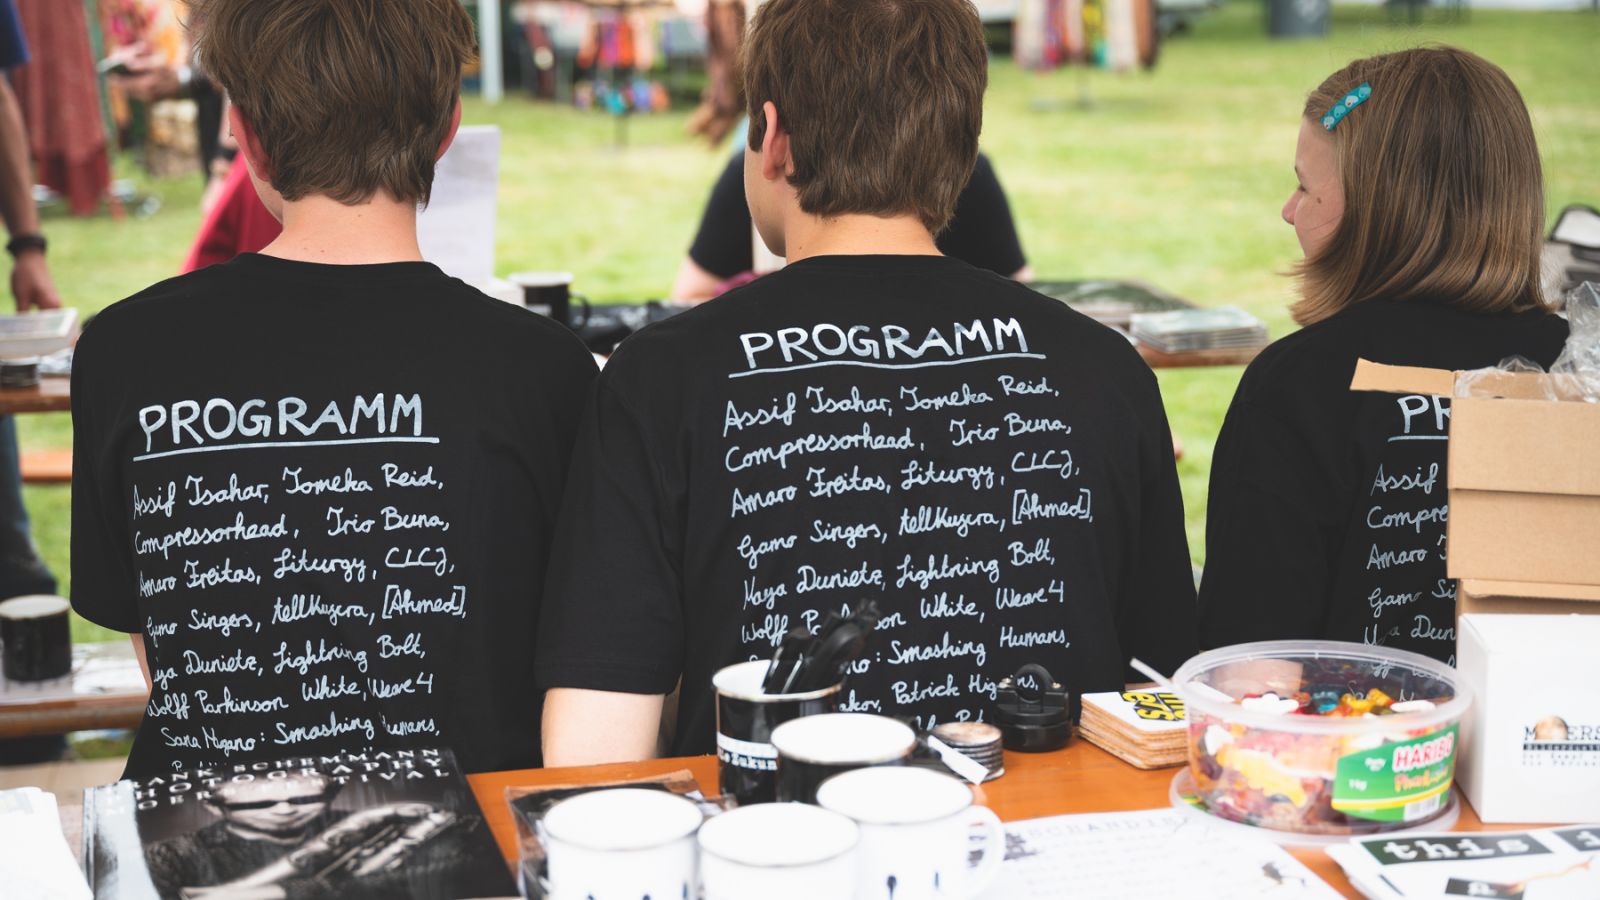 schwarz/weiß-Motiv: drei junge Volunteers sitzen auf einer Parkbank mit dem Rücken zum Betrachter, sie tragen das Festival T-Shirt 2022